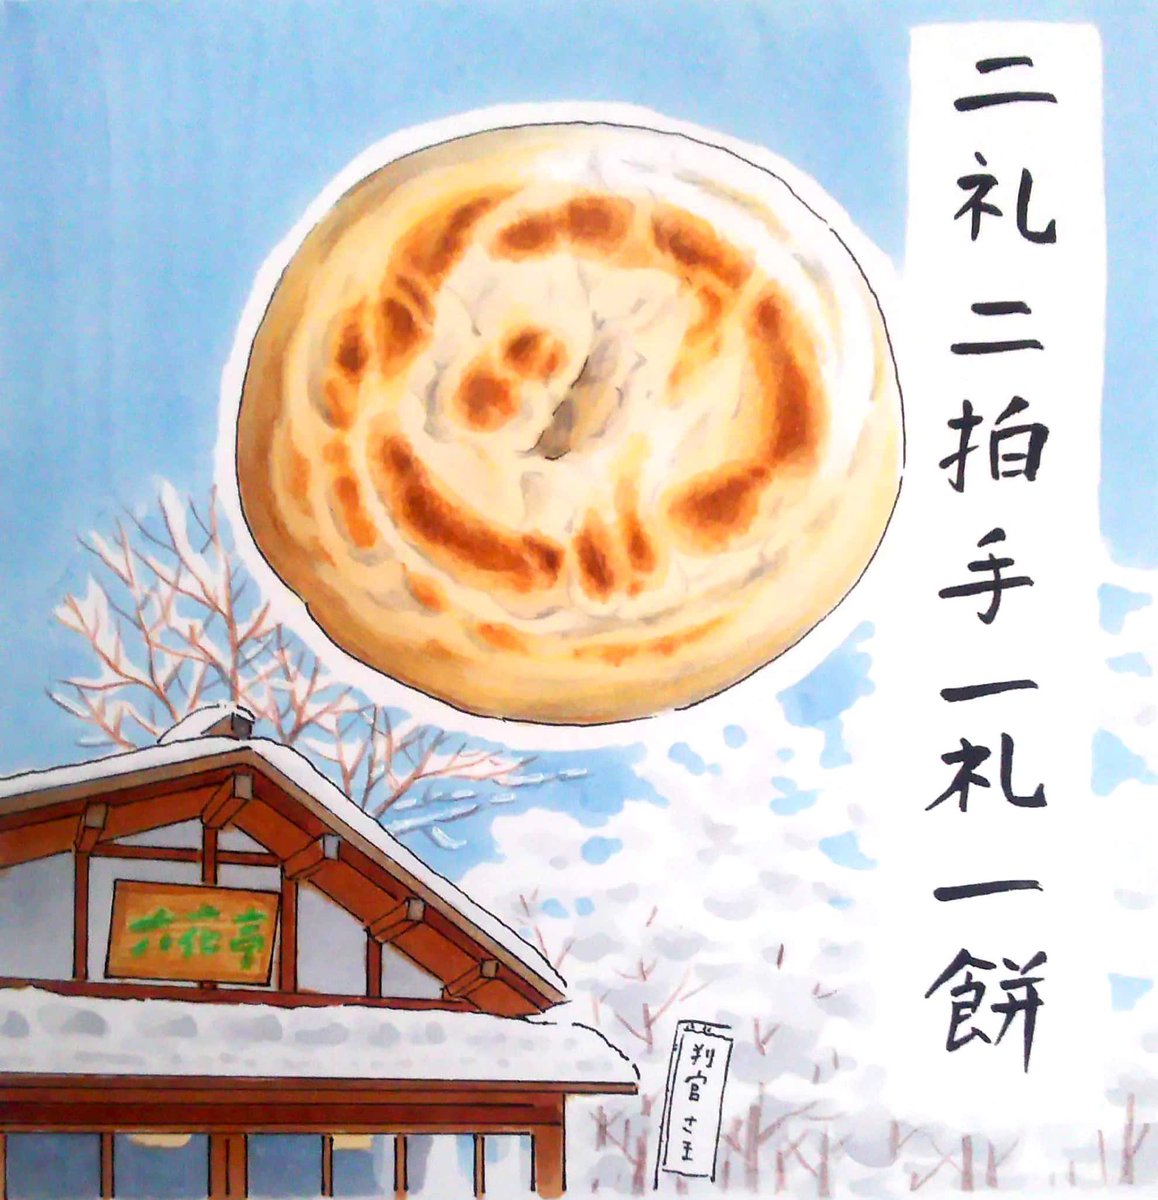 今日は #和菓子の日 。北海道の和菓子はいかがですか🍡
・六花亭の判官さま
・五勝手屋羊羹
・みなともちのべこもち
・札幌新倉屋のお団子 